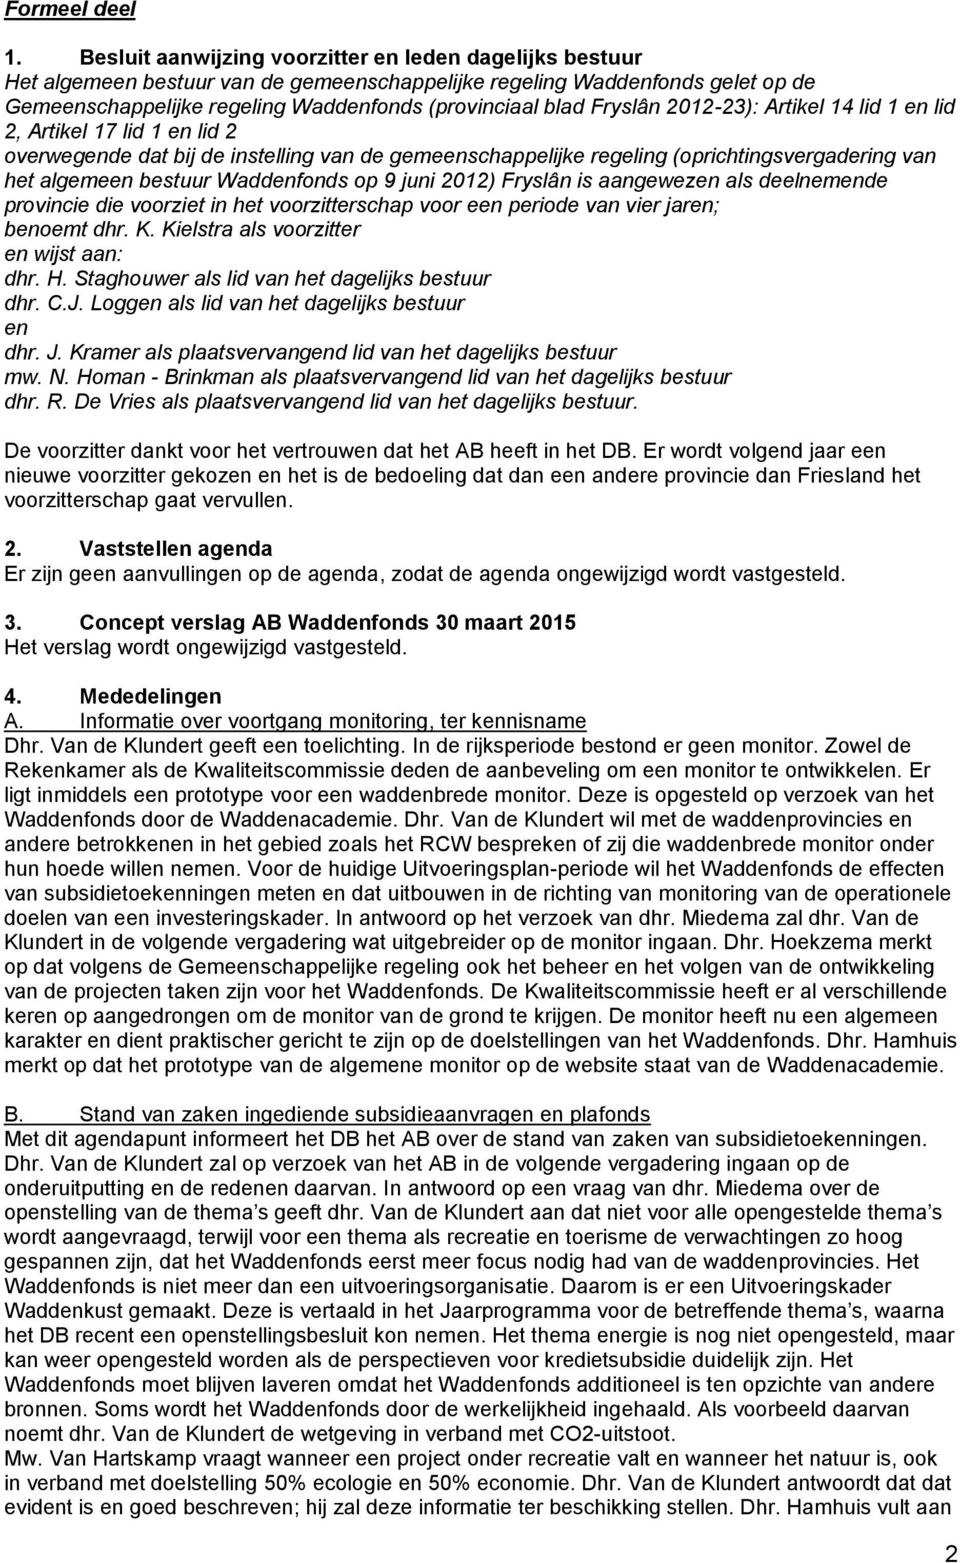 Fryslân 2012-23): Artikel 14 lid 1 en lid 2, Artikel 17 lid 1 en lid 2 overwegende dat bij de instelling van de gemeenschappelijke regeling (oprichtingsvergadering van het algemeen bestuur